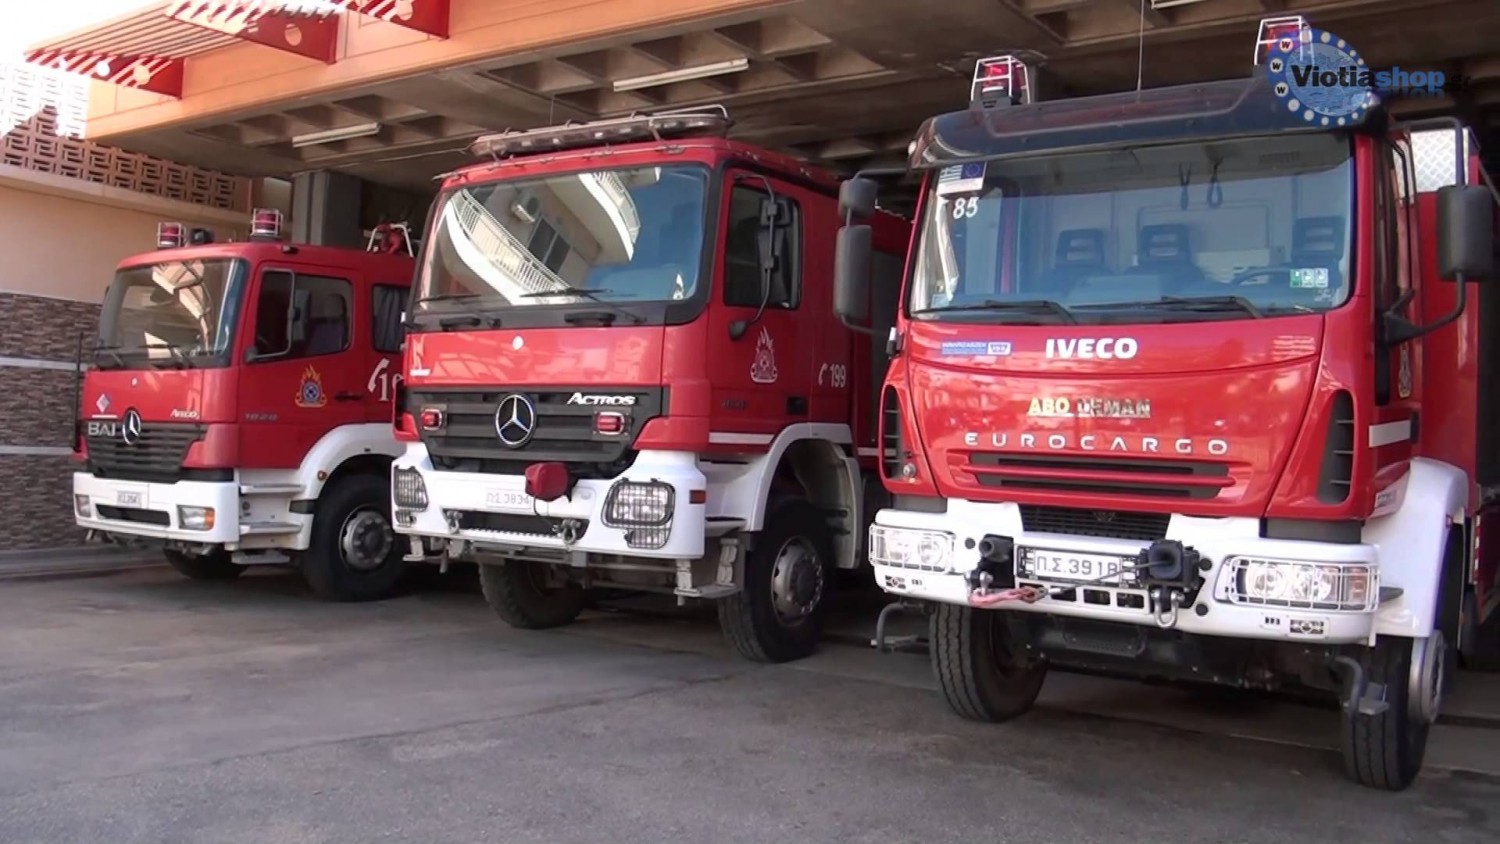 Η πυροσβεστική είχε κάνει άσκηση πυρόσβεσης στην Πεντέλη 2 μήνες πριν τη φονική πυρκαγιά